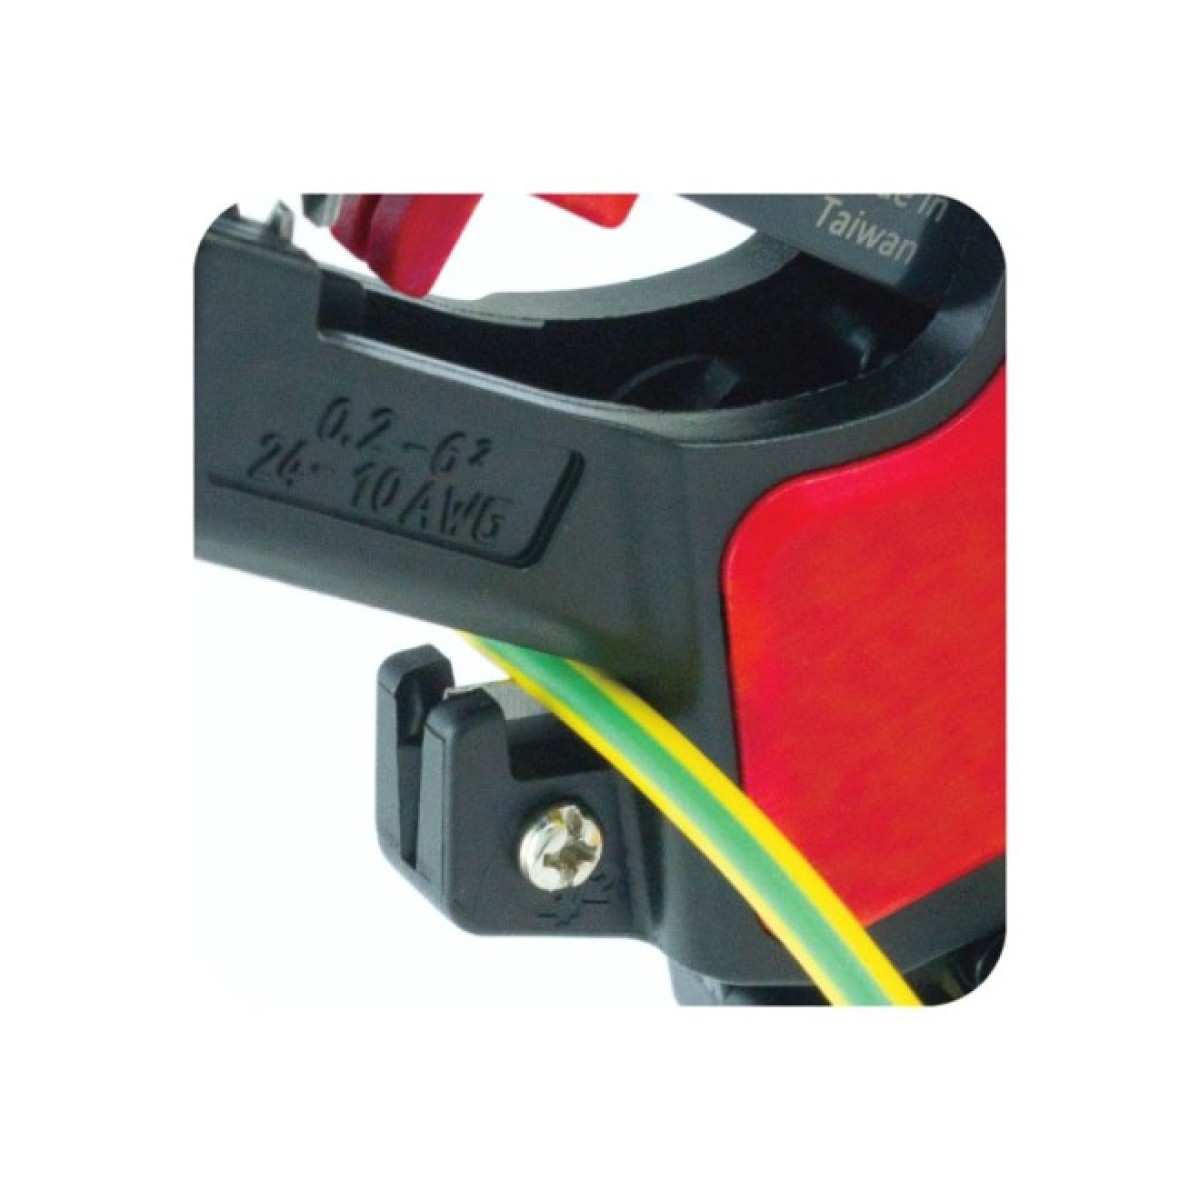 Автоматический инструмент для зачистки и обрезки изолированного кабеля AWG 24-10/0,2-6,0 мм², Hanlong 98_98.jpg - фото 4